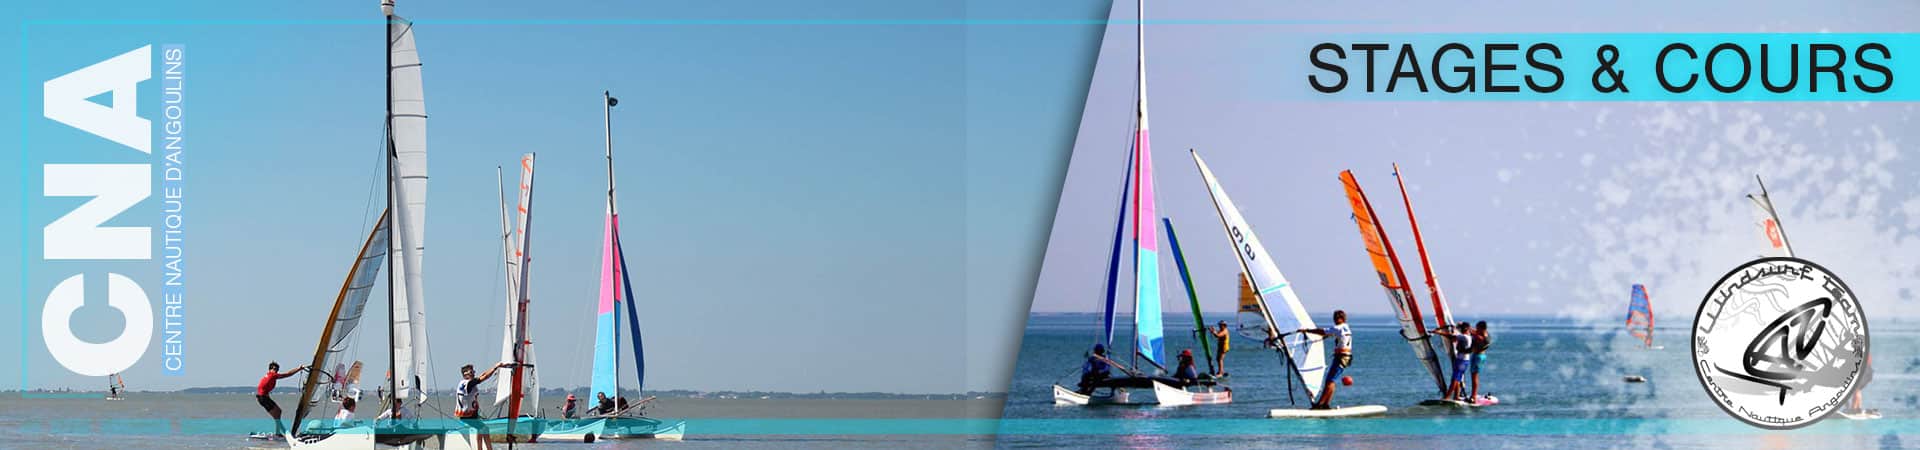 Stages de voile en mer La Rochelle. Optimist, Catamaran et Planche à voile au choix. Photo des 3 types de supports nautique sur cette photo panoramique.